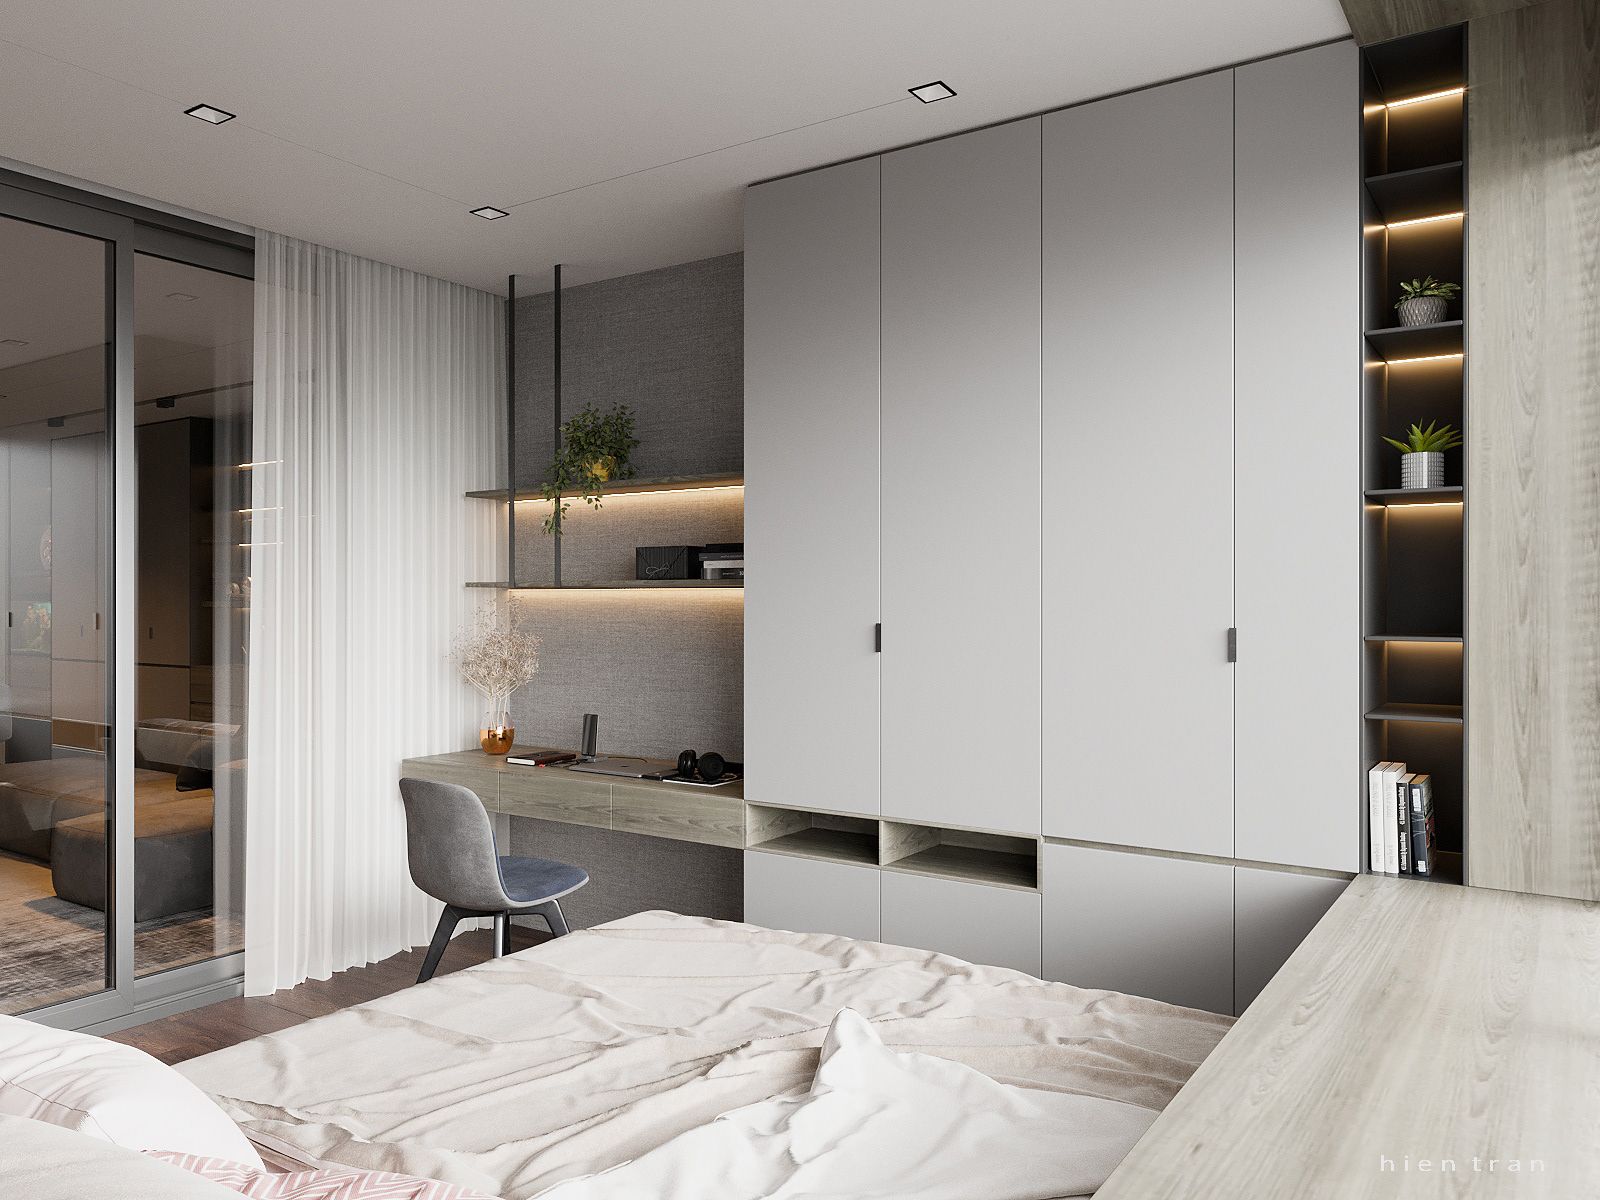 Không chỉ là một phòng ngủ bình thường nữa, không gian này sẽ cho bạn cảm giác hoàn toàn mới lạ và thú vị. Thiết kế của phòng ngủ 13m2 được trang trí với những màu sắc tươi tắn, đồ đạc tiện nghi và các giải pháp tiết kiệm không gian sáng tạo.